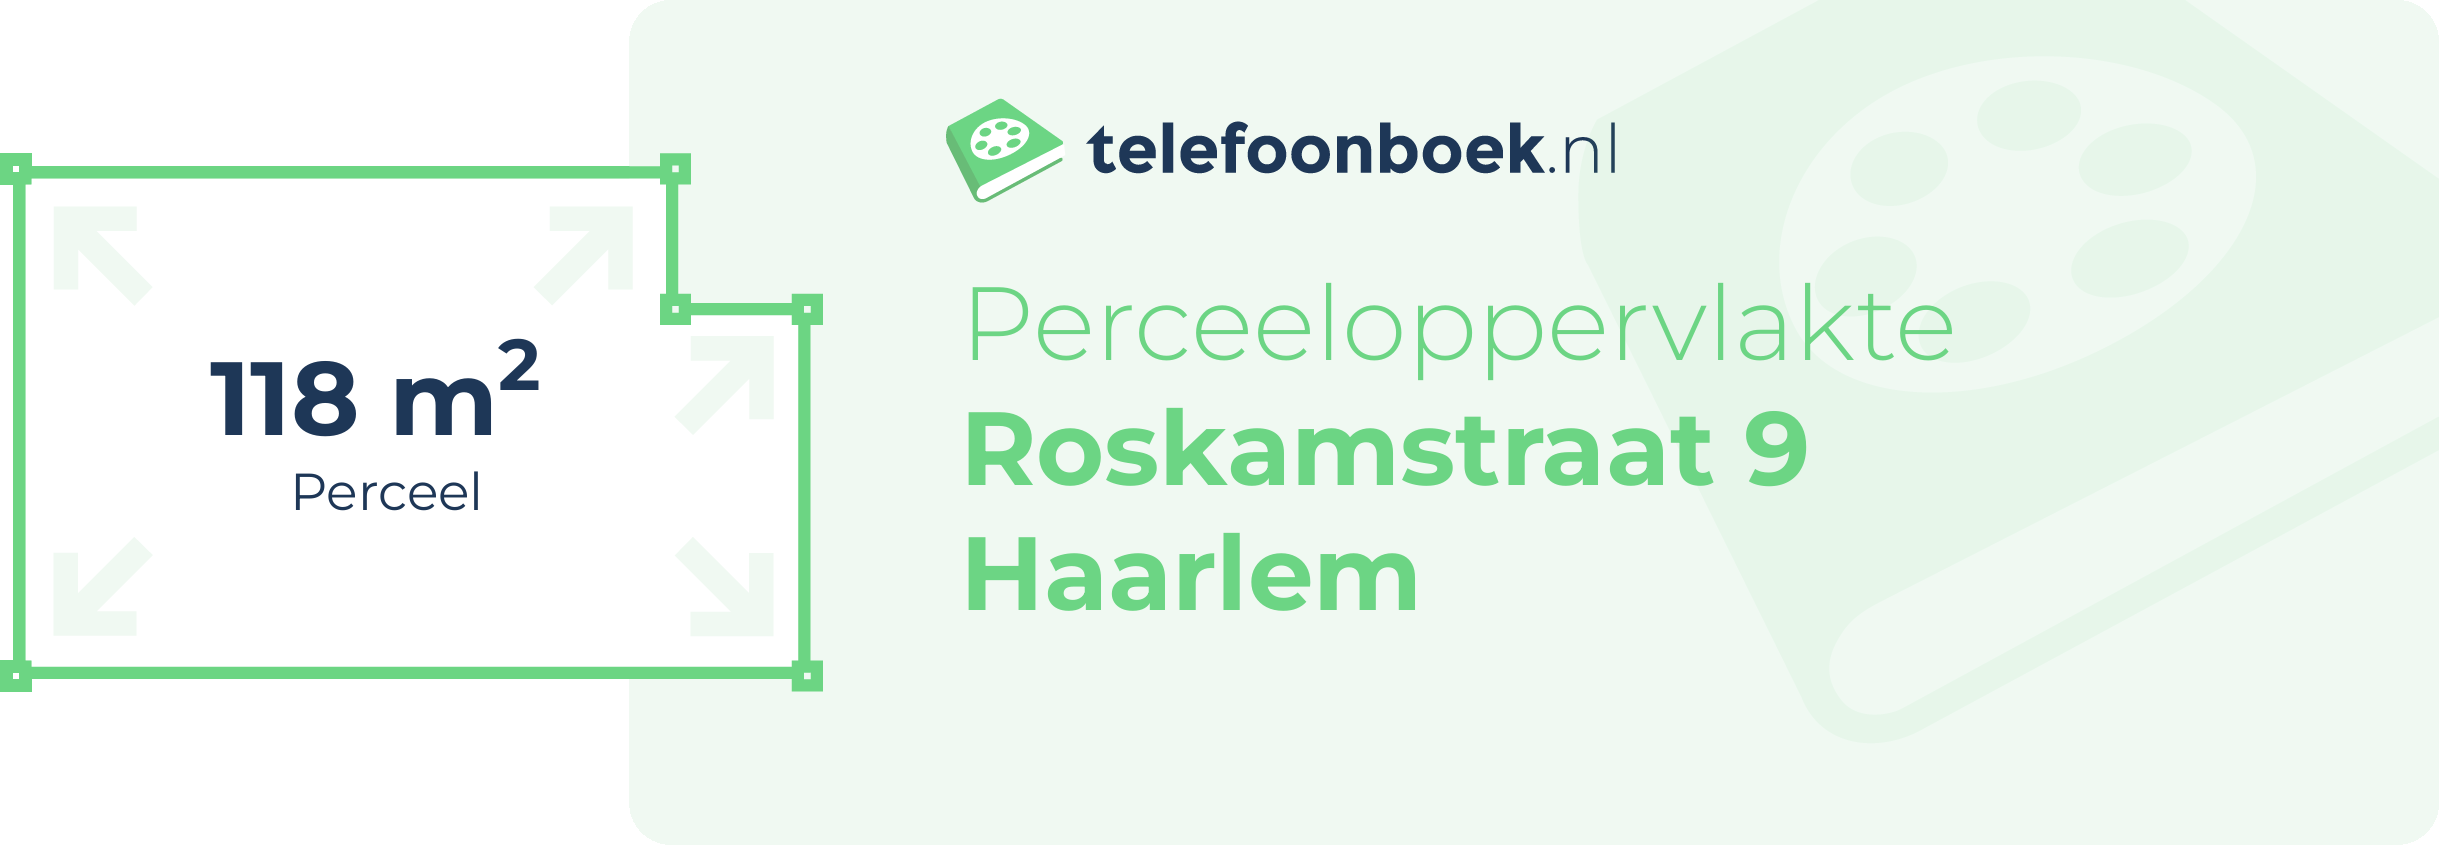 Perceeloppervlakte Roskamstraat 9 Haarlem